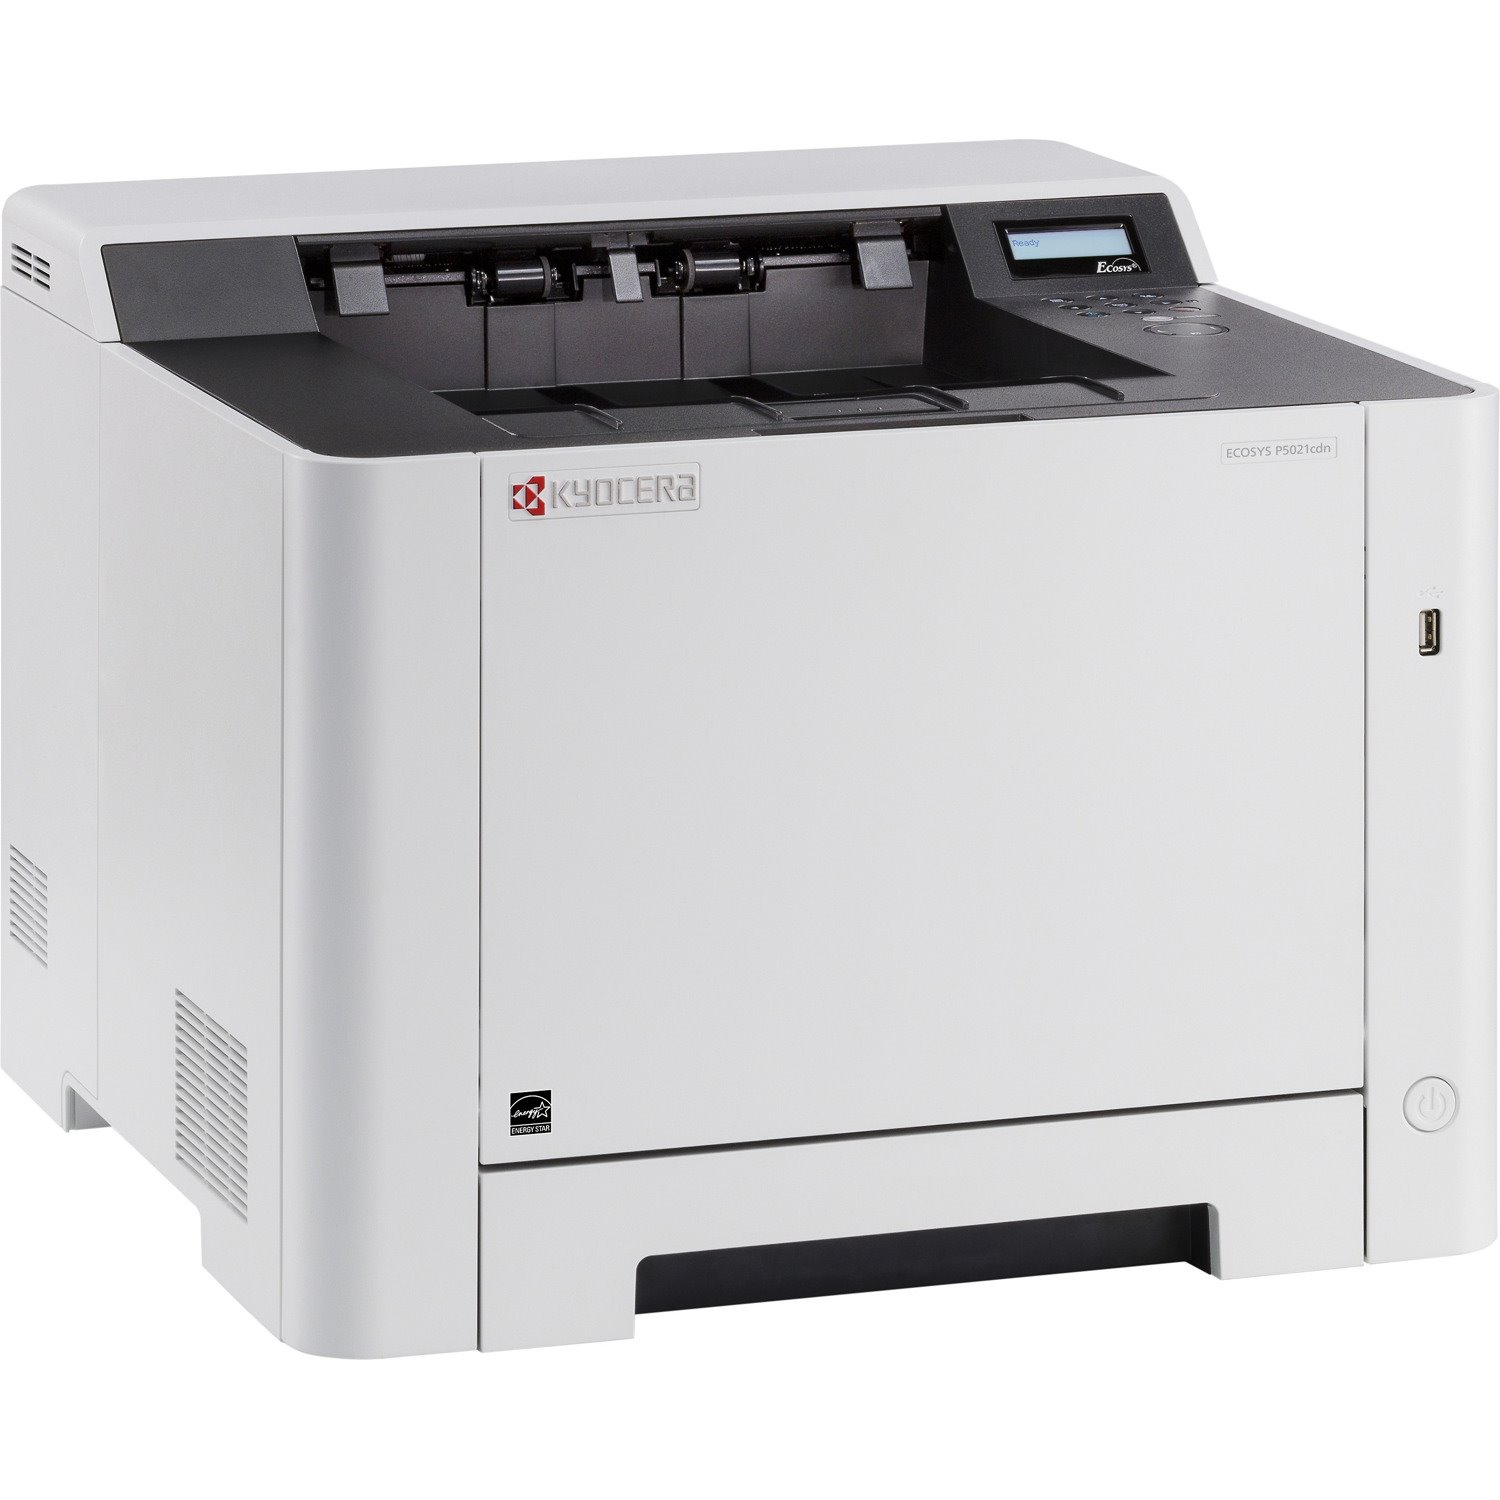 Kyocera Ecosys P5021cdn Desktop Laser Printer - Colour